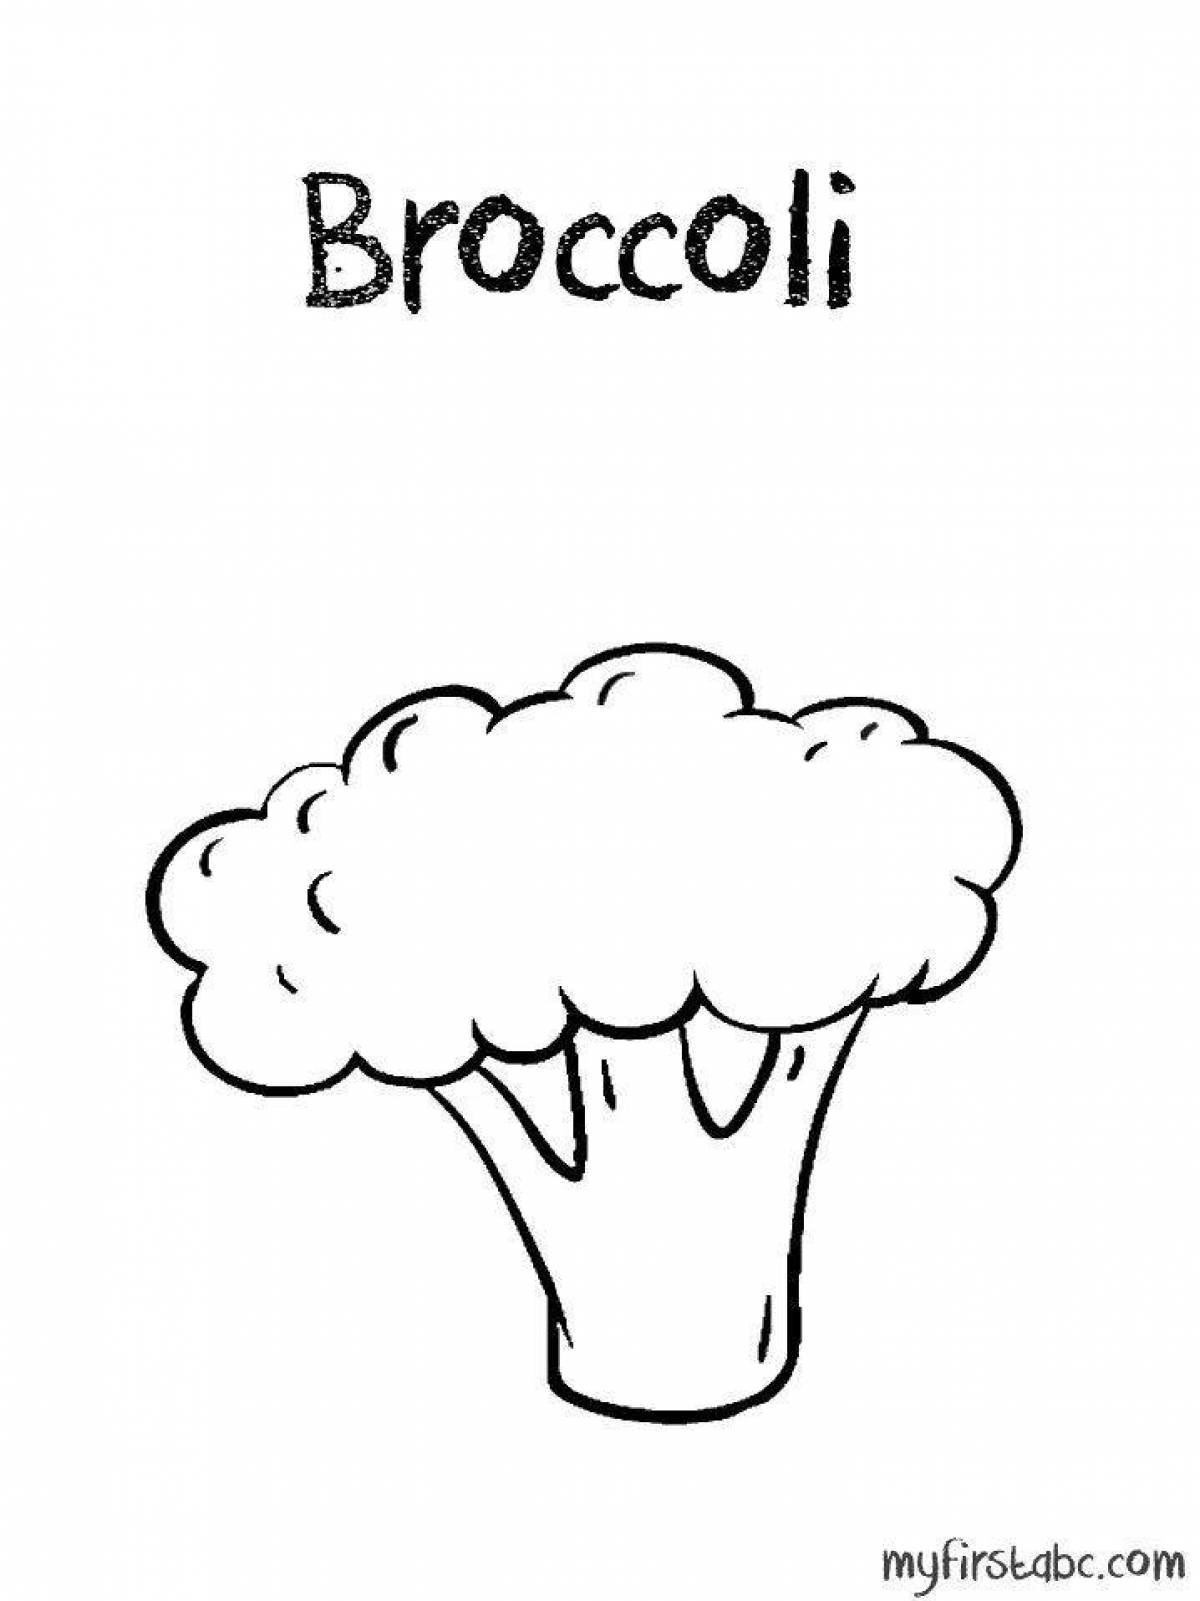 Broccoli раскраска